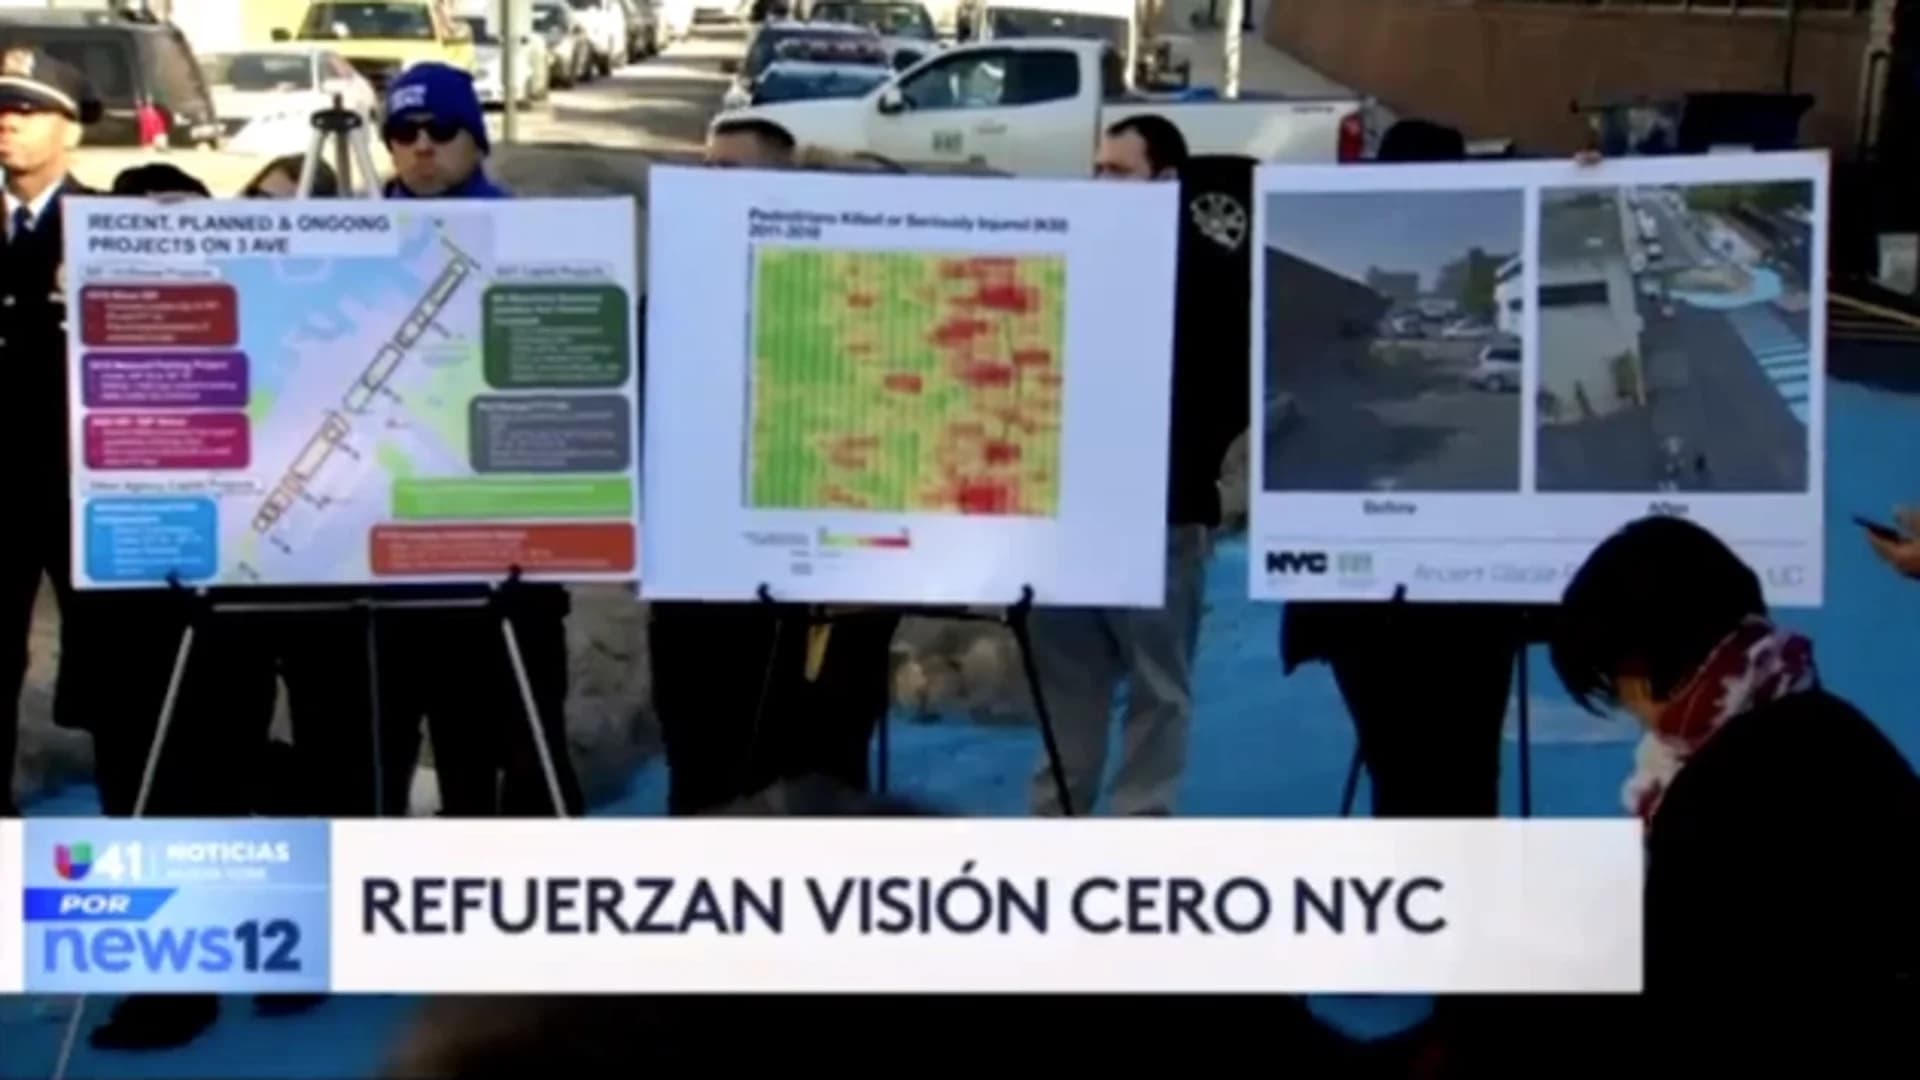 Univision 41 News Brief: Refuerzan plan de "visión cero" en NYC